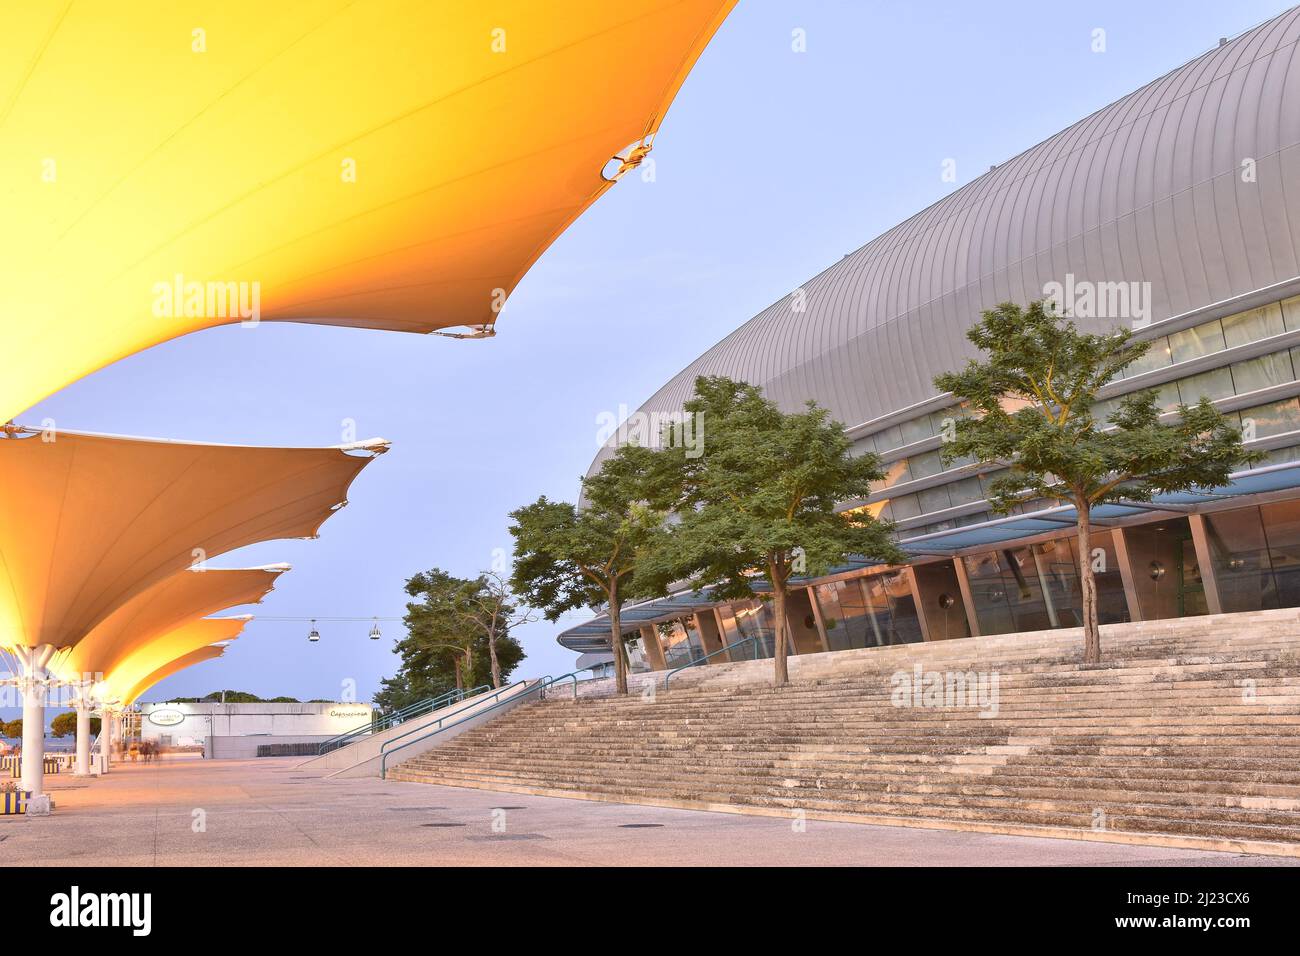 Altice Arena edificio moderno esterno e passerella con strutture a membrana tensile illuminate al crepuscolo, Parque das Nacoes distretto di Lisbona Portogallo. Foto Stock